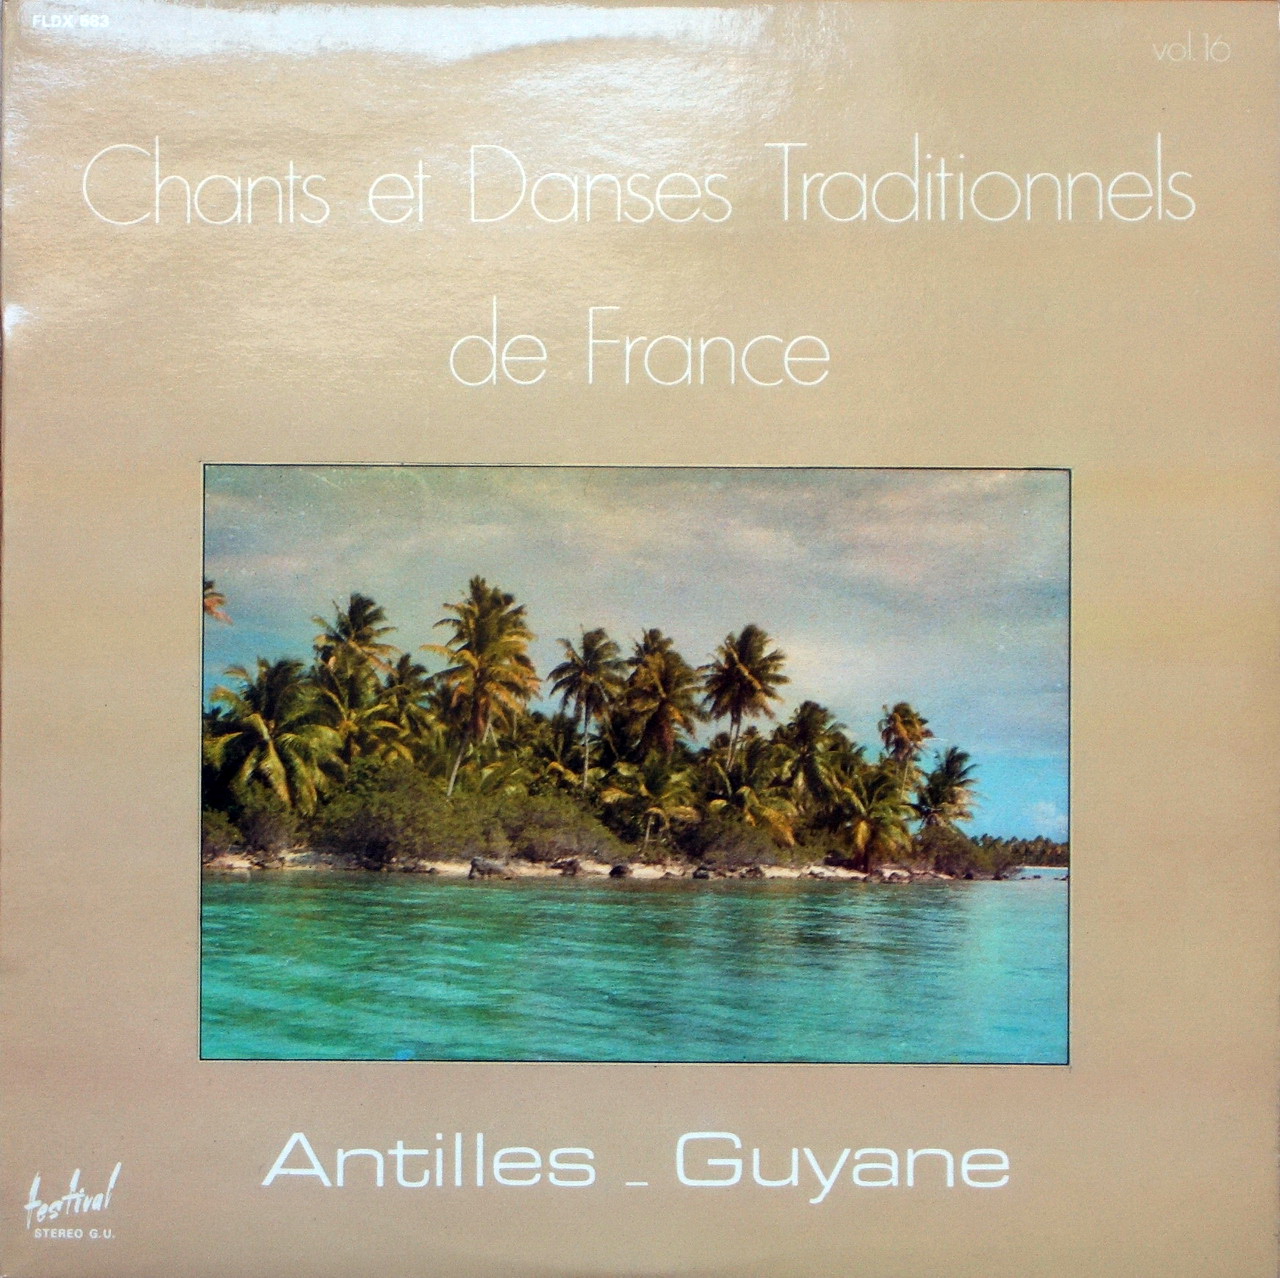 chants et danses traditionels de antilles guayane Fldx+583